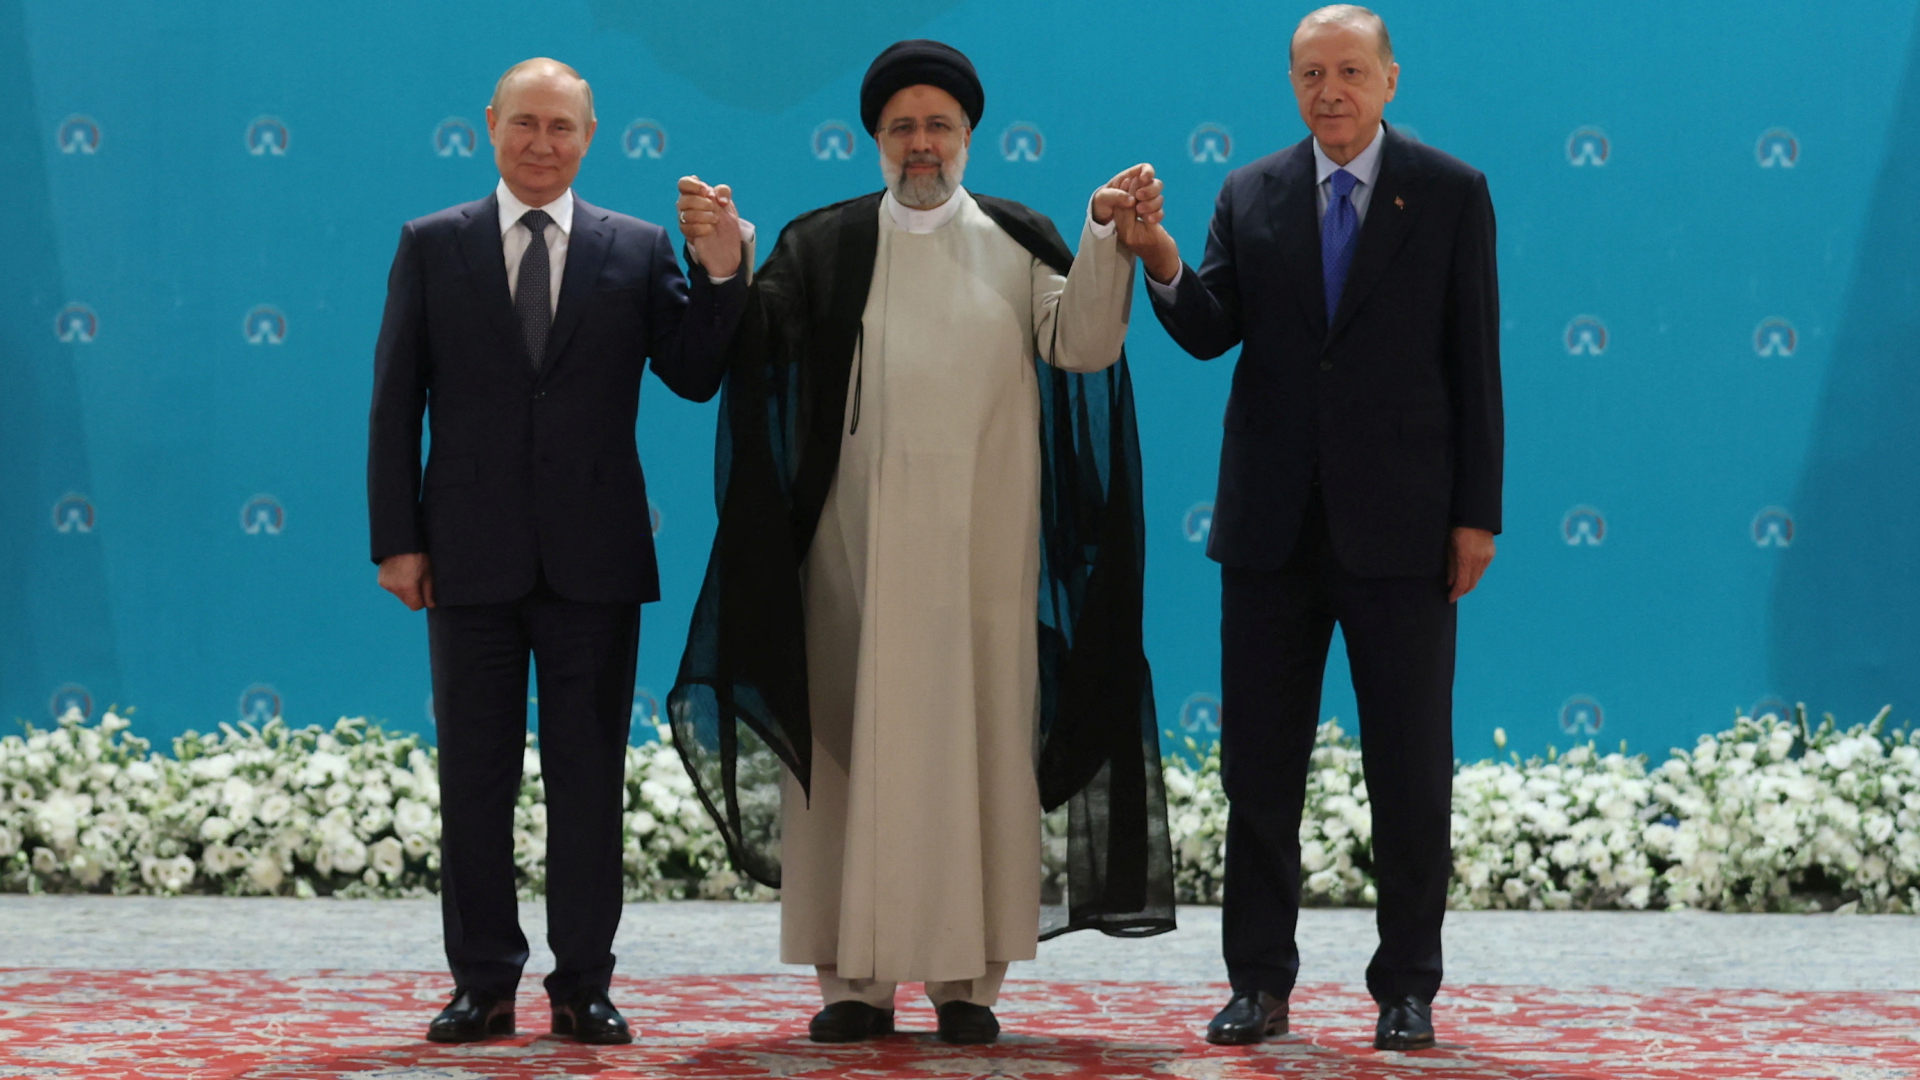 Die Präsidenten Wladimir Putin (Russland), Ebrahim Raisi (Iran) und Recep Tayyip Erdogan (Türkei) bei ihrem Treffen in Teheran  | via REUTERS